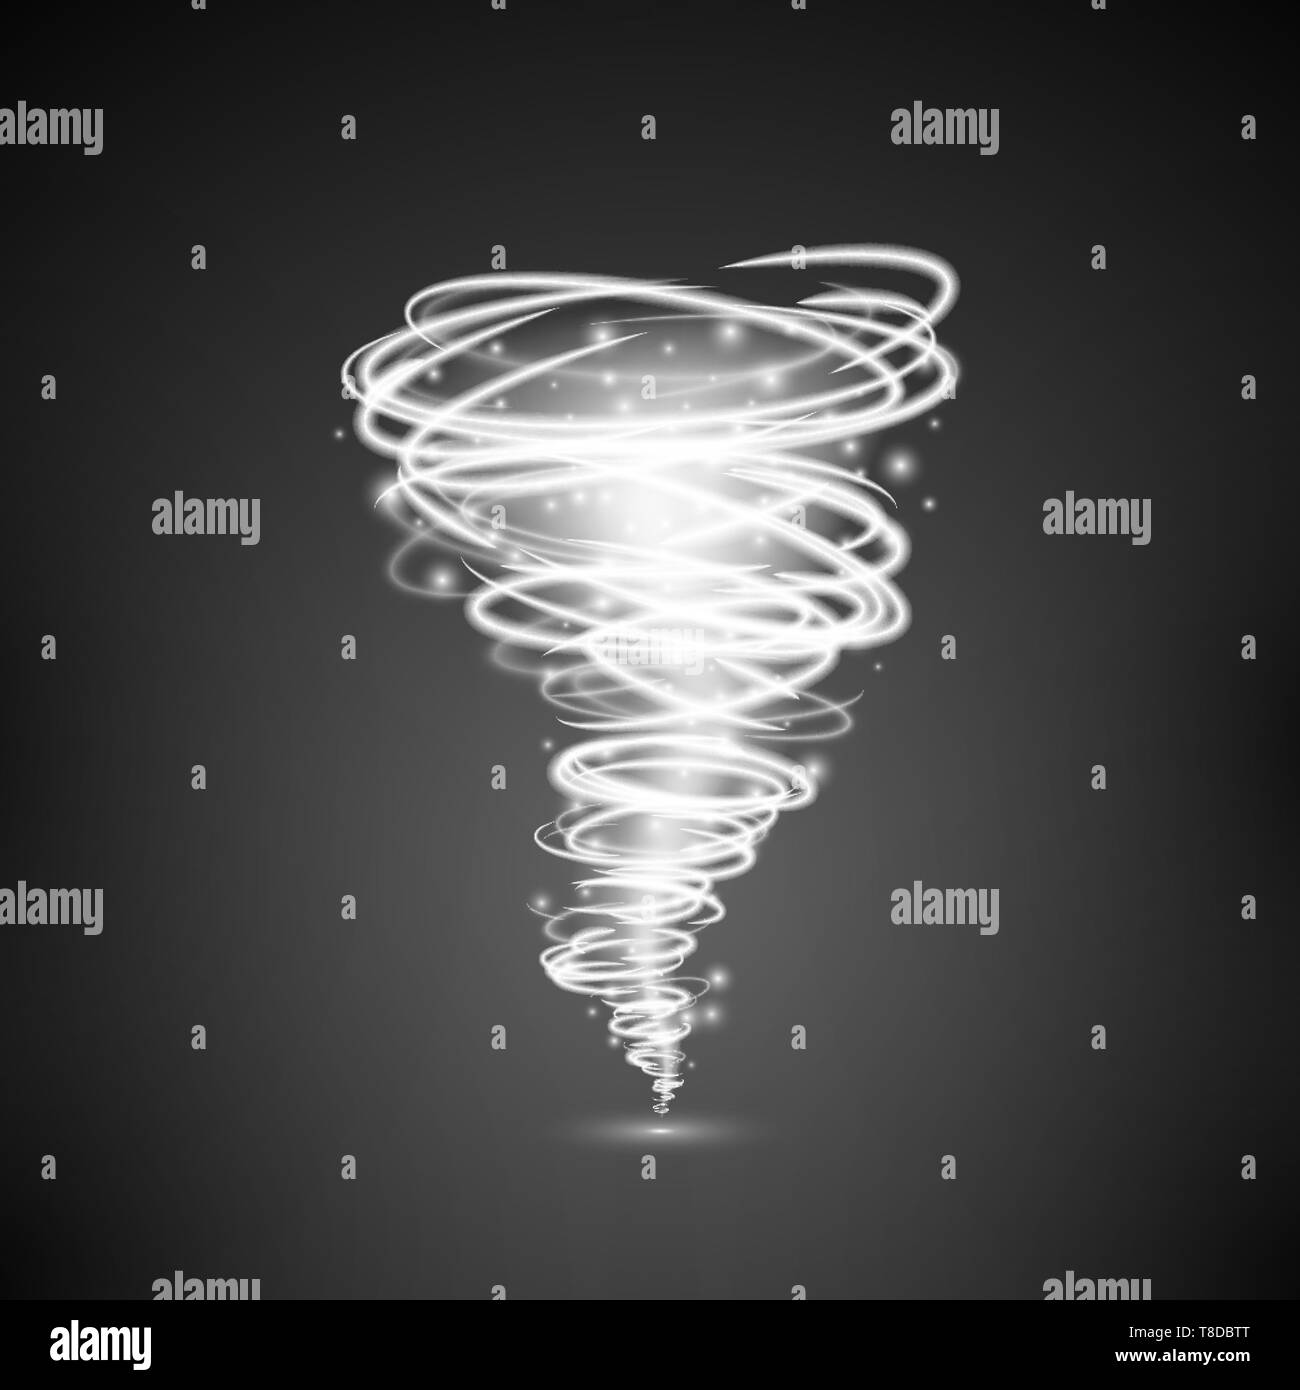 Lumière abstraite tornade vortex illumination magique. Effet de tourbillon ou de l'ouragan. Vector illustration isolé sur fond sombre Illustration de Vecteur